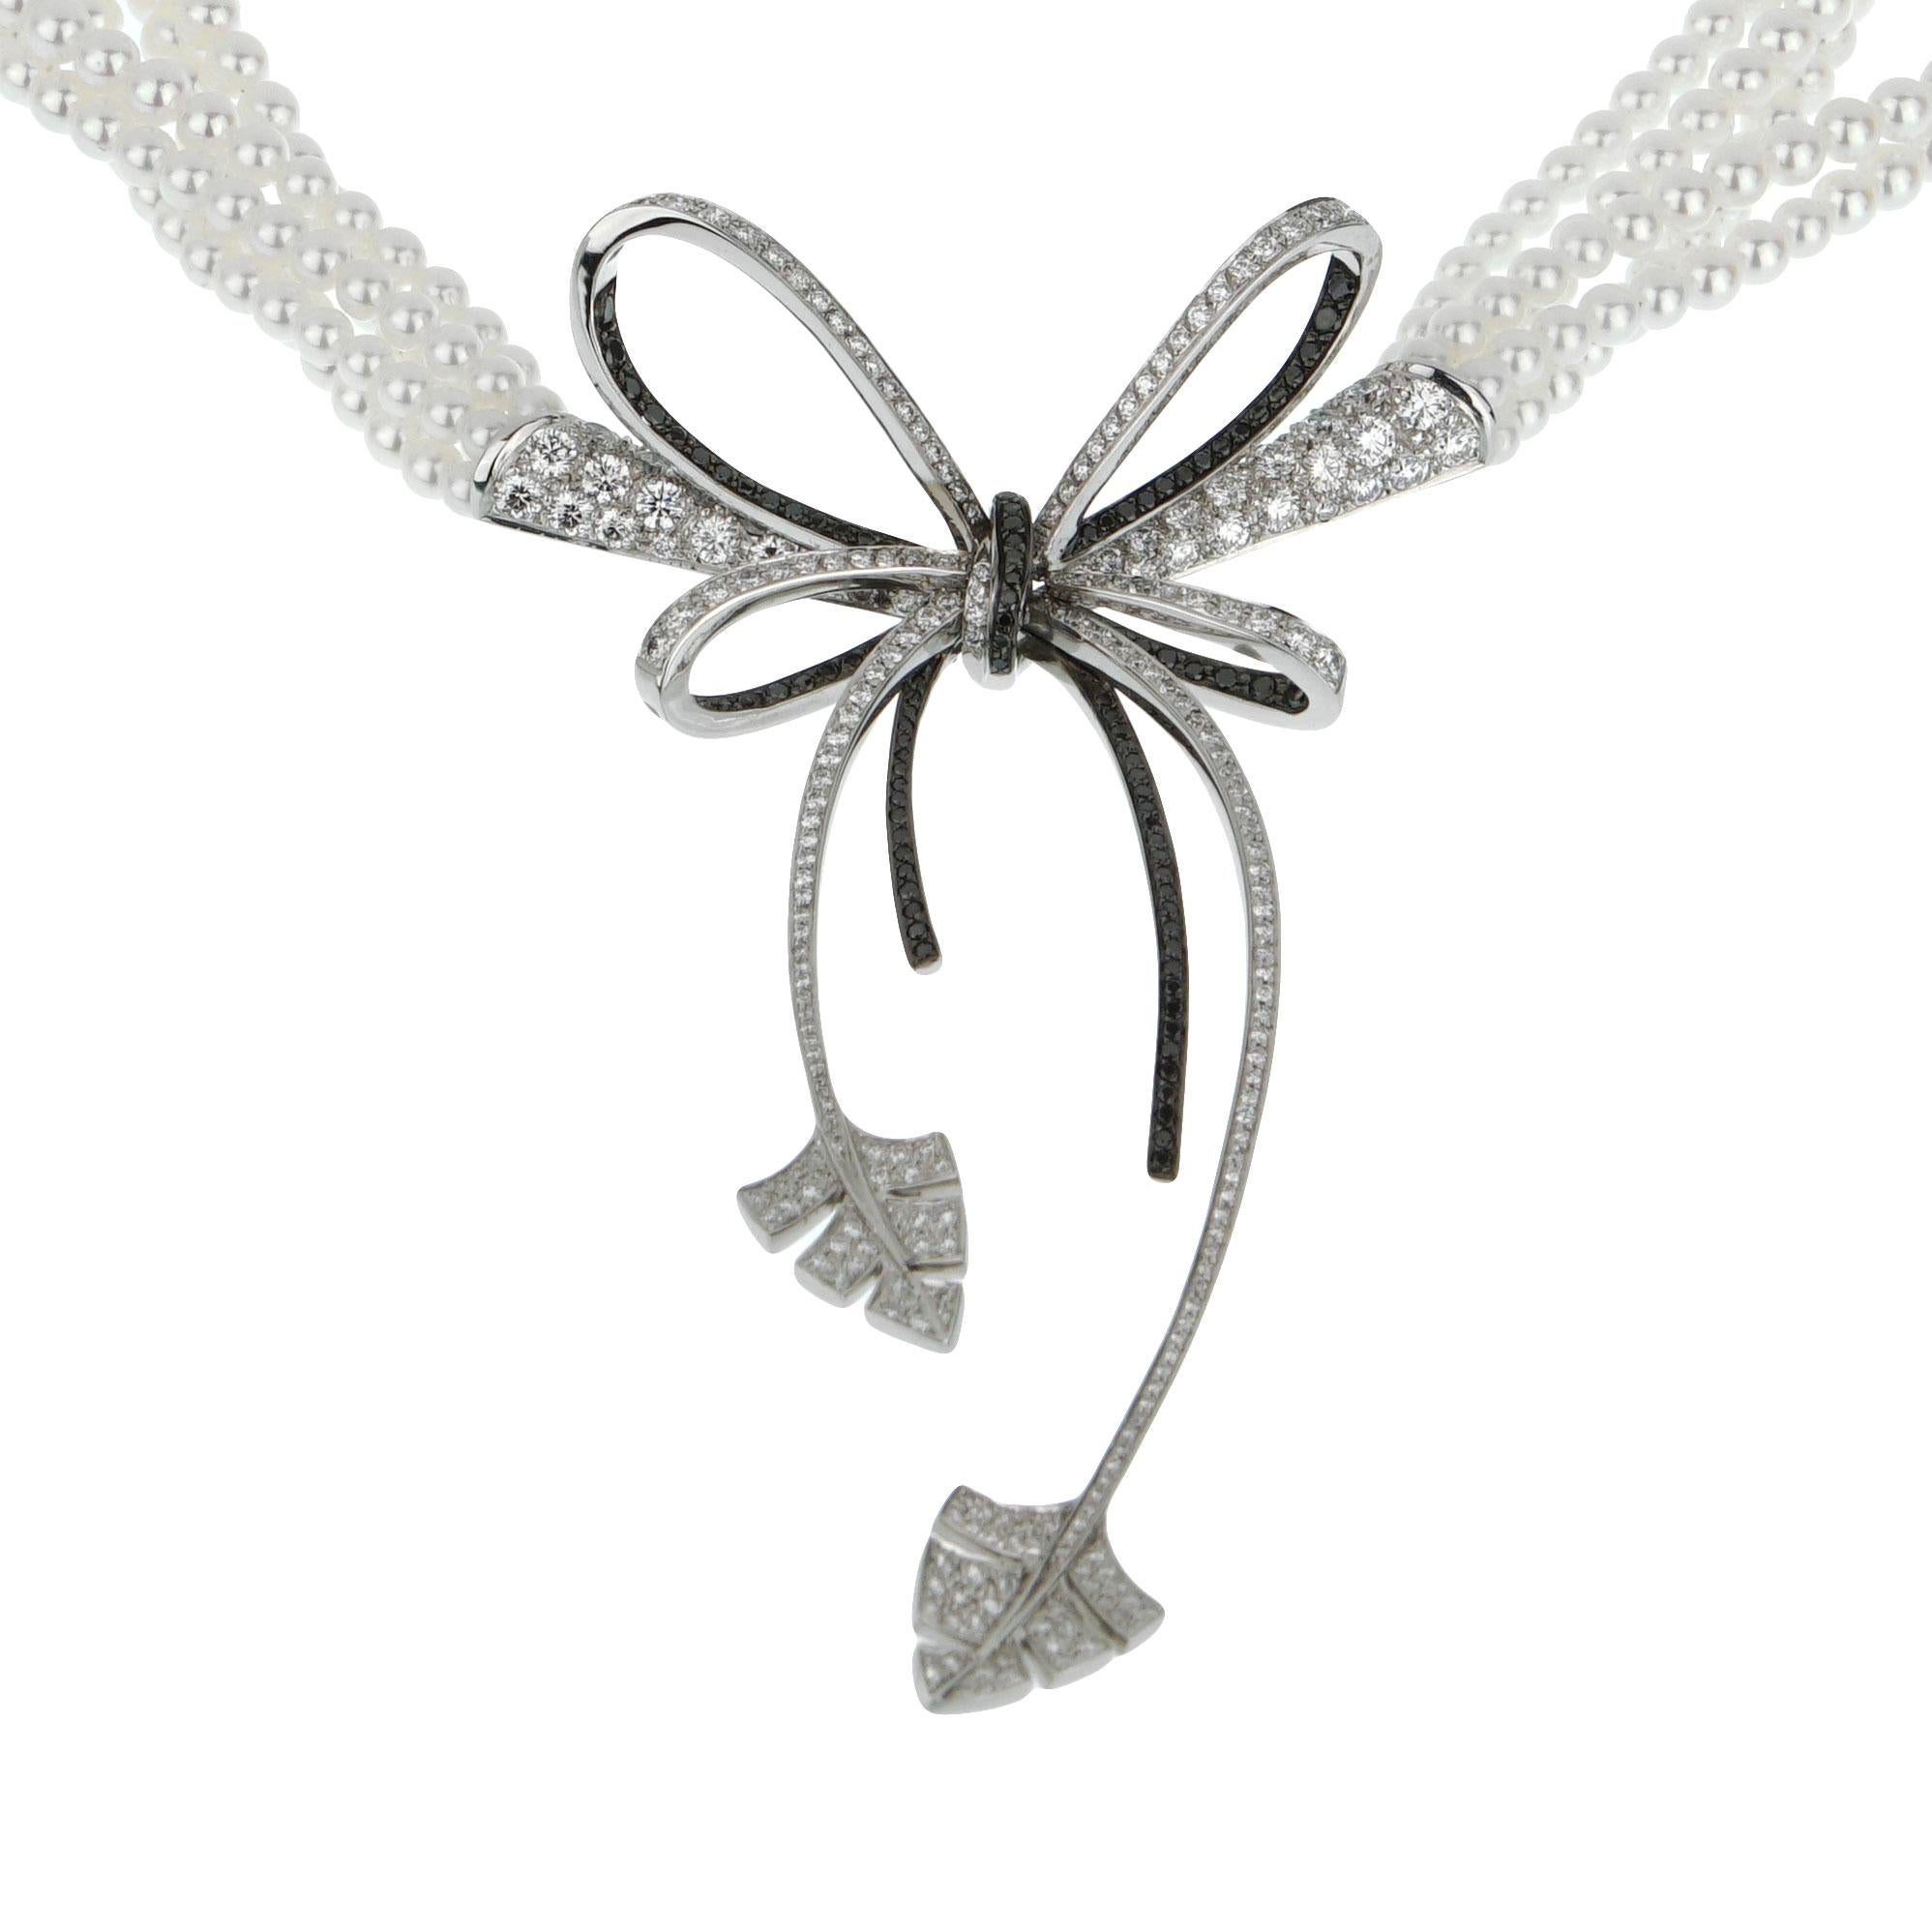 Un magnifique collier de perles et de diamants Chanel tout neuf, présentant un délicat nœud incorporant des diamants blancs et noirs brillants en or blanc 18k. Le collier est suspendu par 5 brins de perles et un mécanisme de fermeture assorti décoré